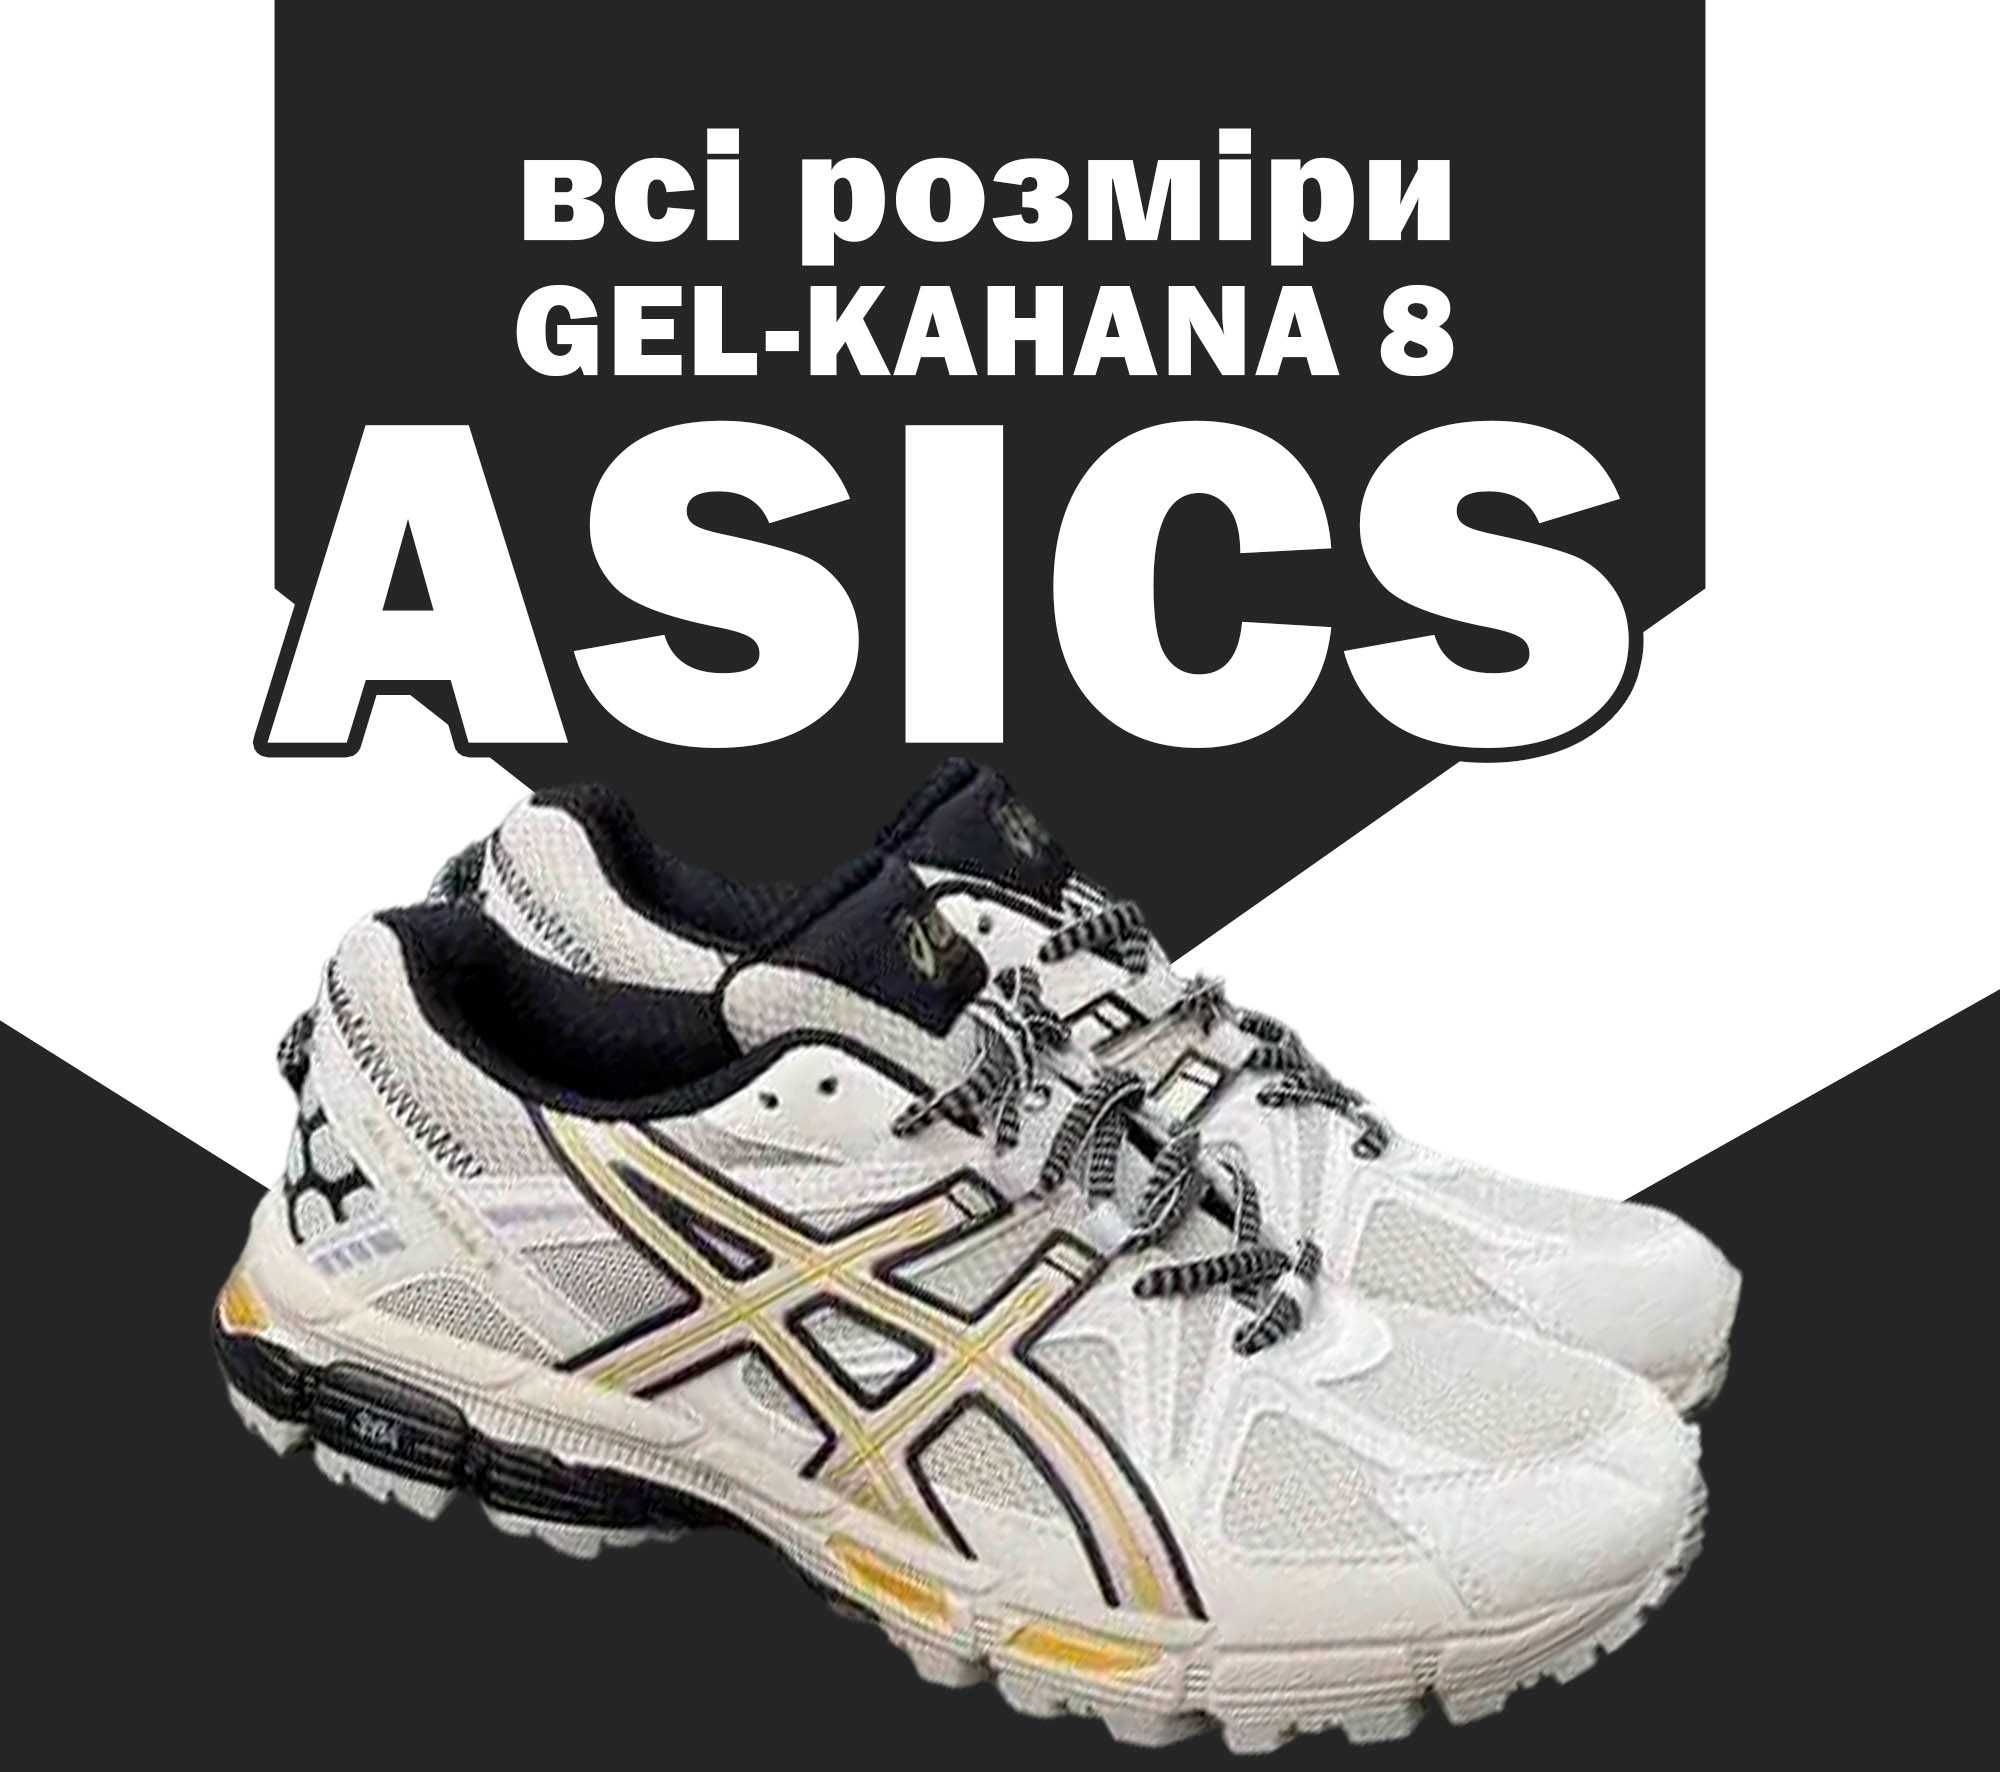 Кроссовки Asics Gel-Kahana 8 Grey Yellow 36-46 асикс Хит!